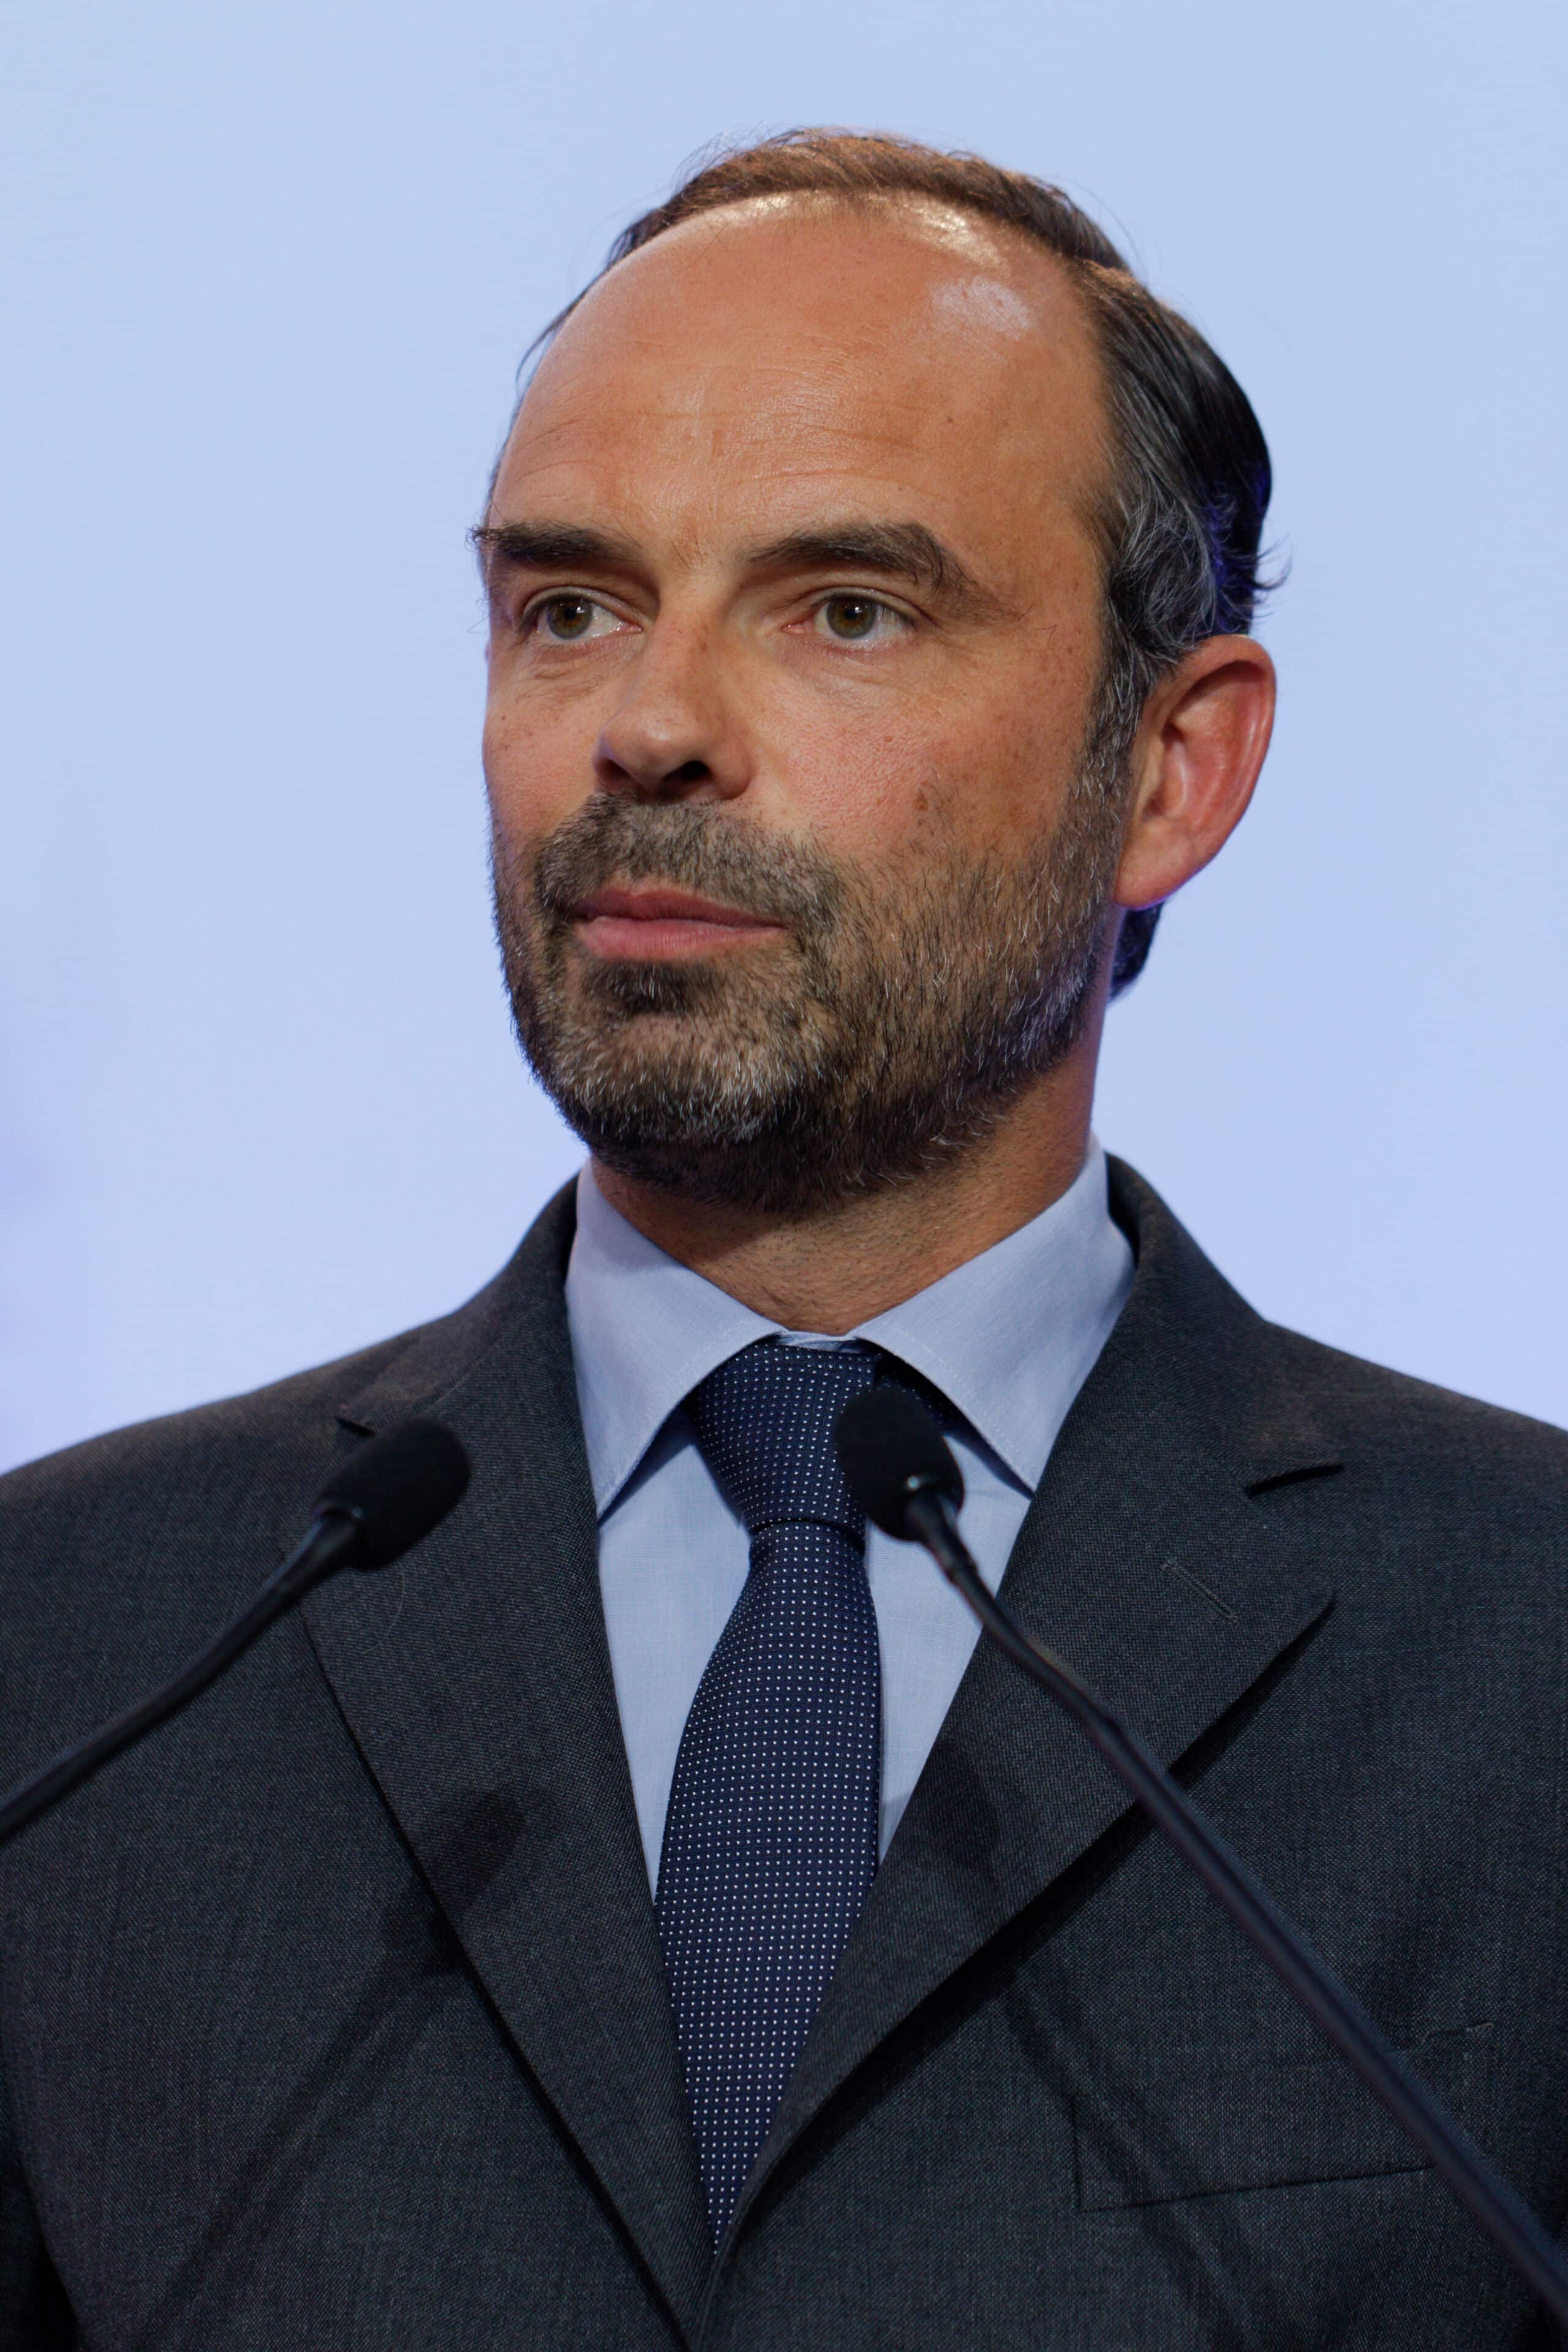 https://en.wikipedia.org/wiki/Édouard_Philippe